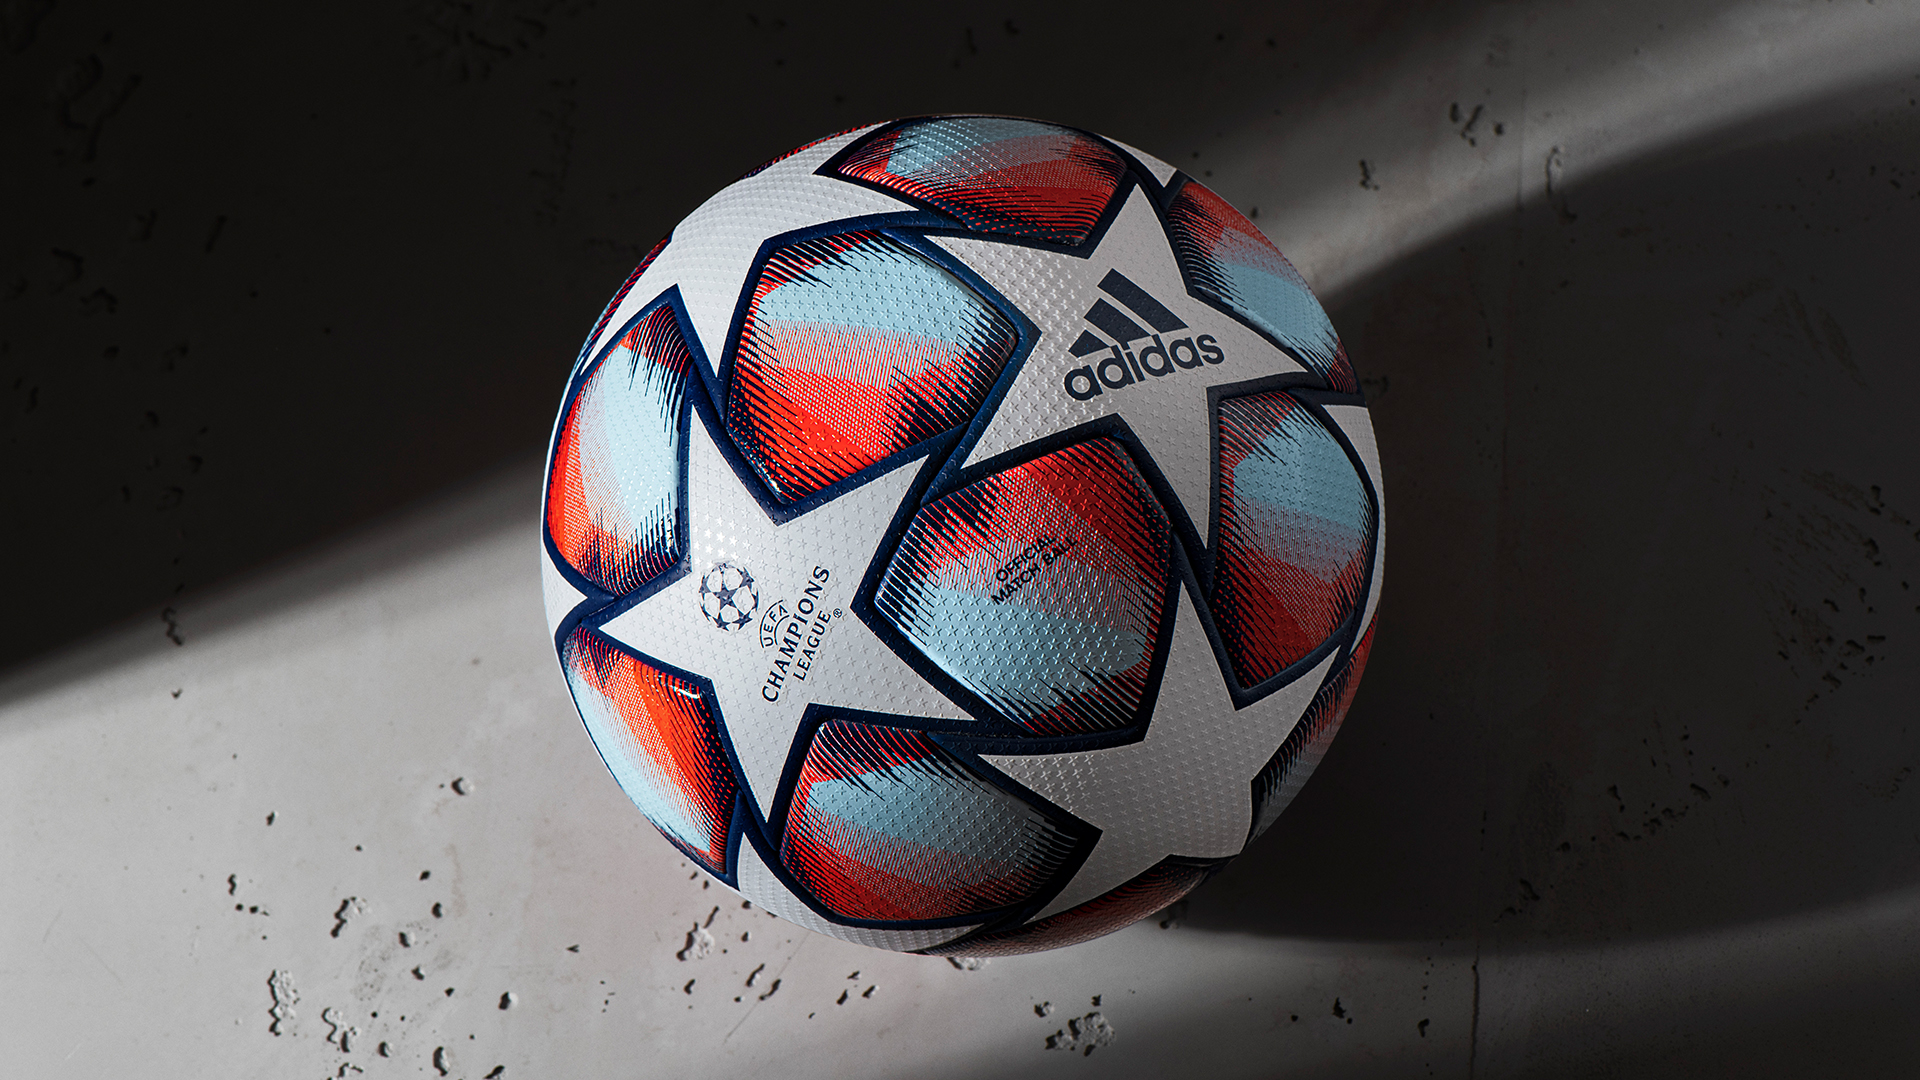 Bóng đá adidas Football Champions League 2020